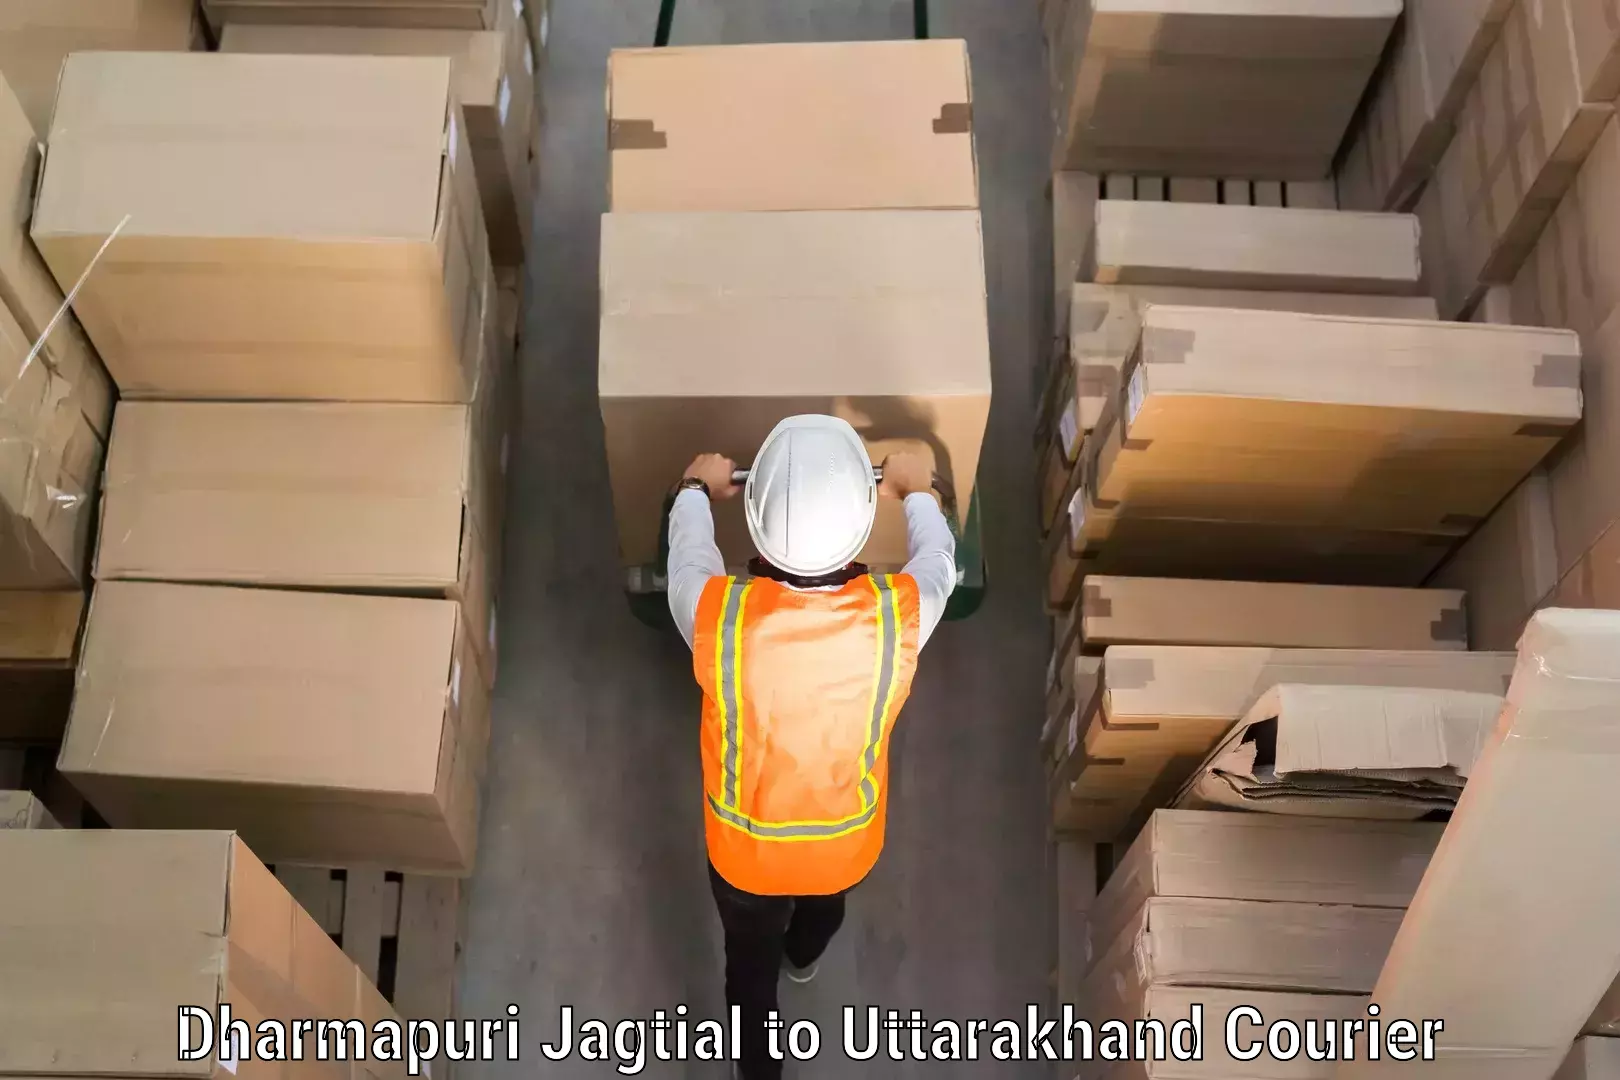 Luggage delivery network Dharmapuri Jagtial to Someshwar